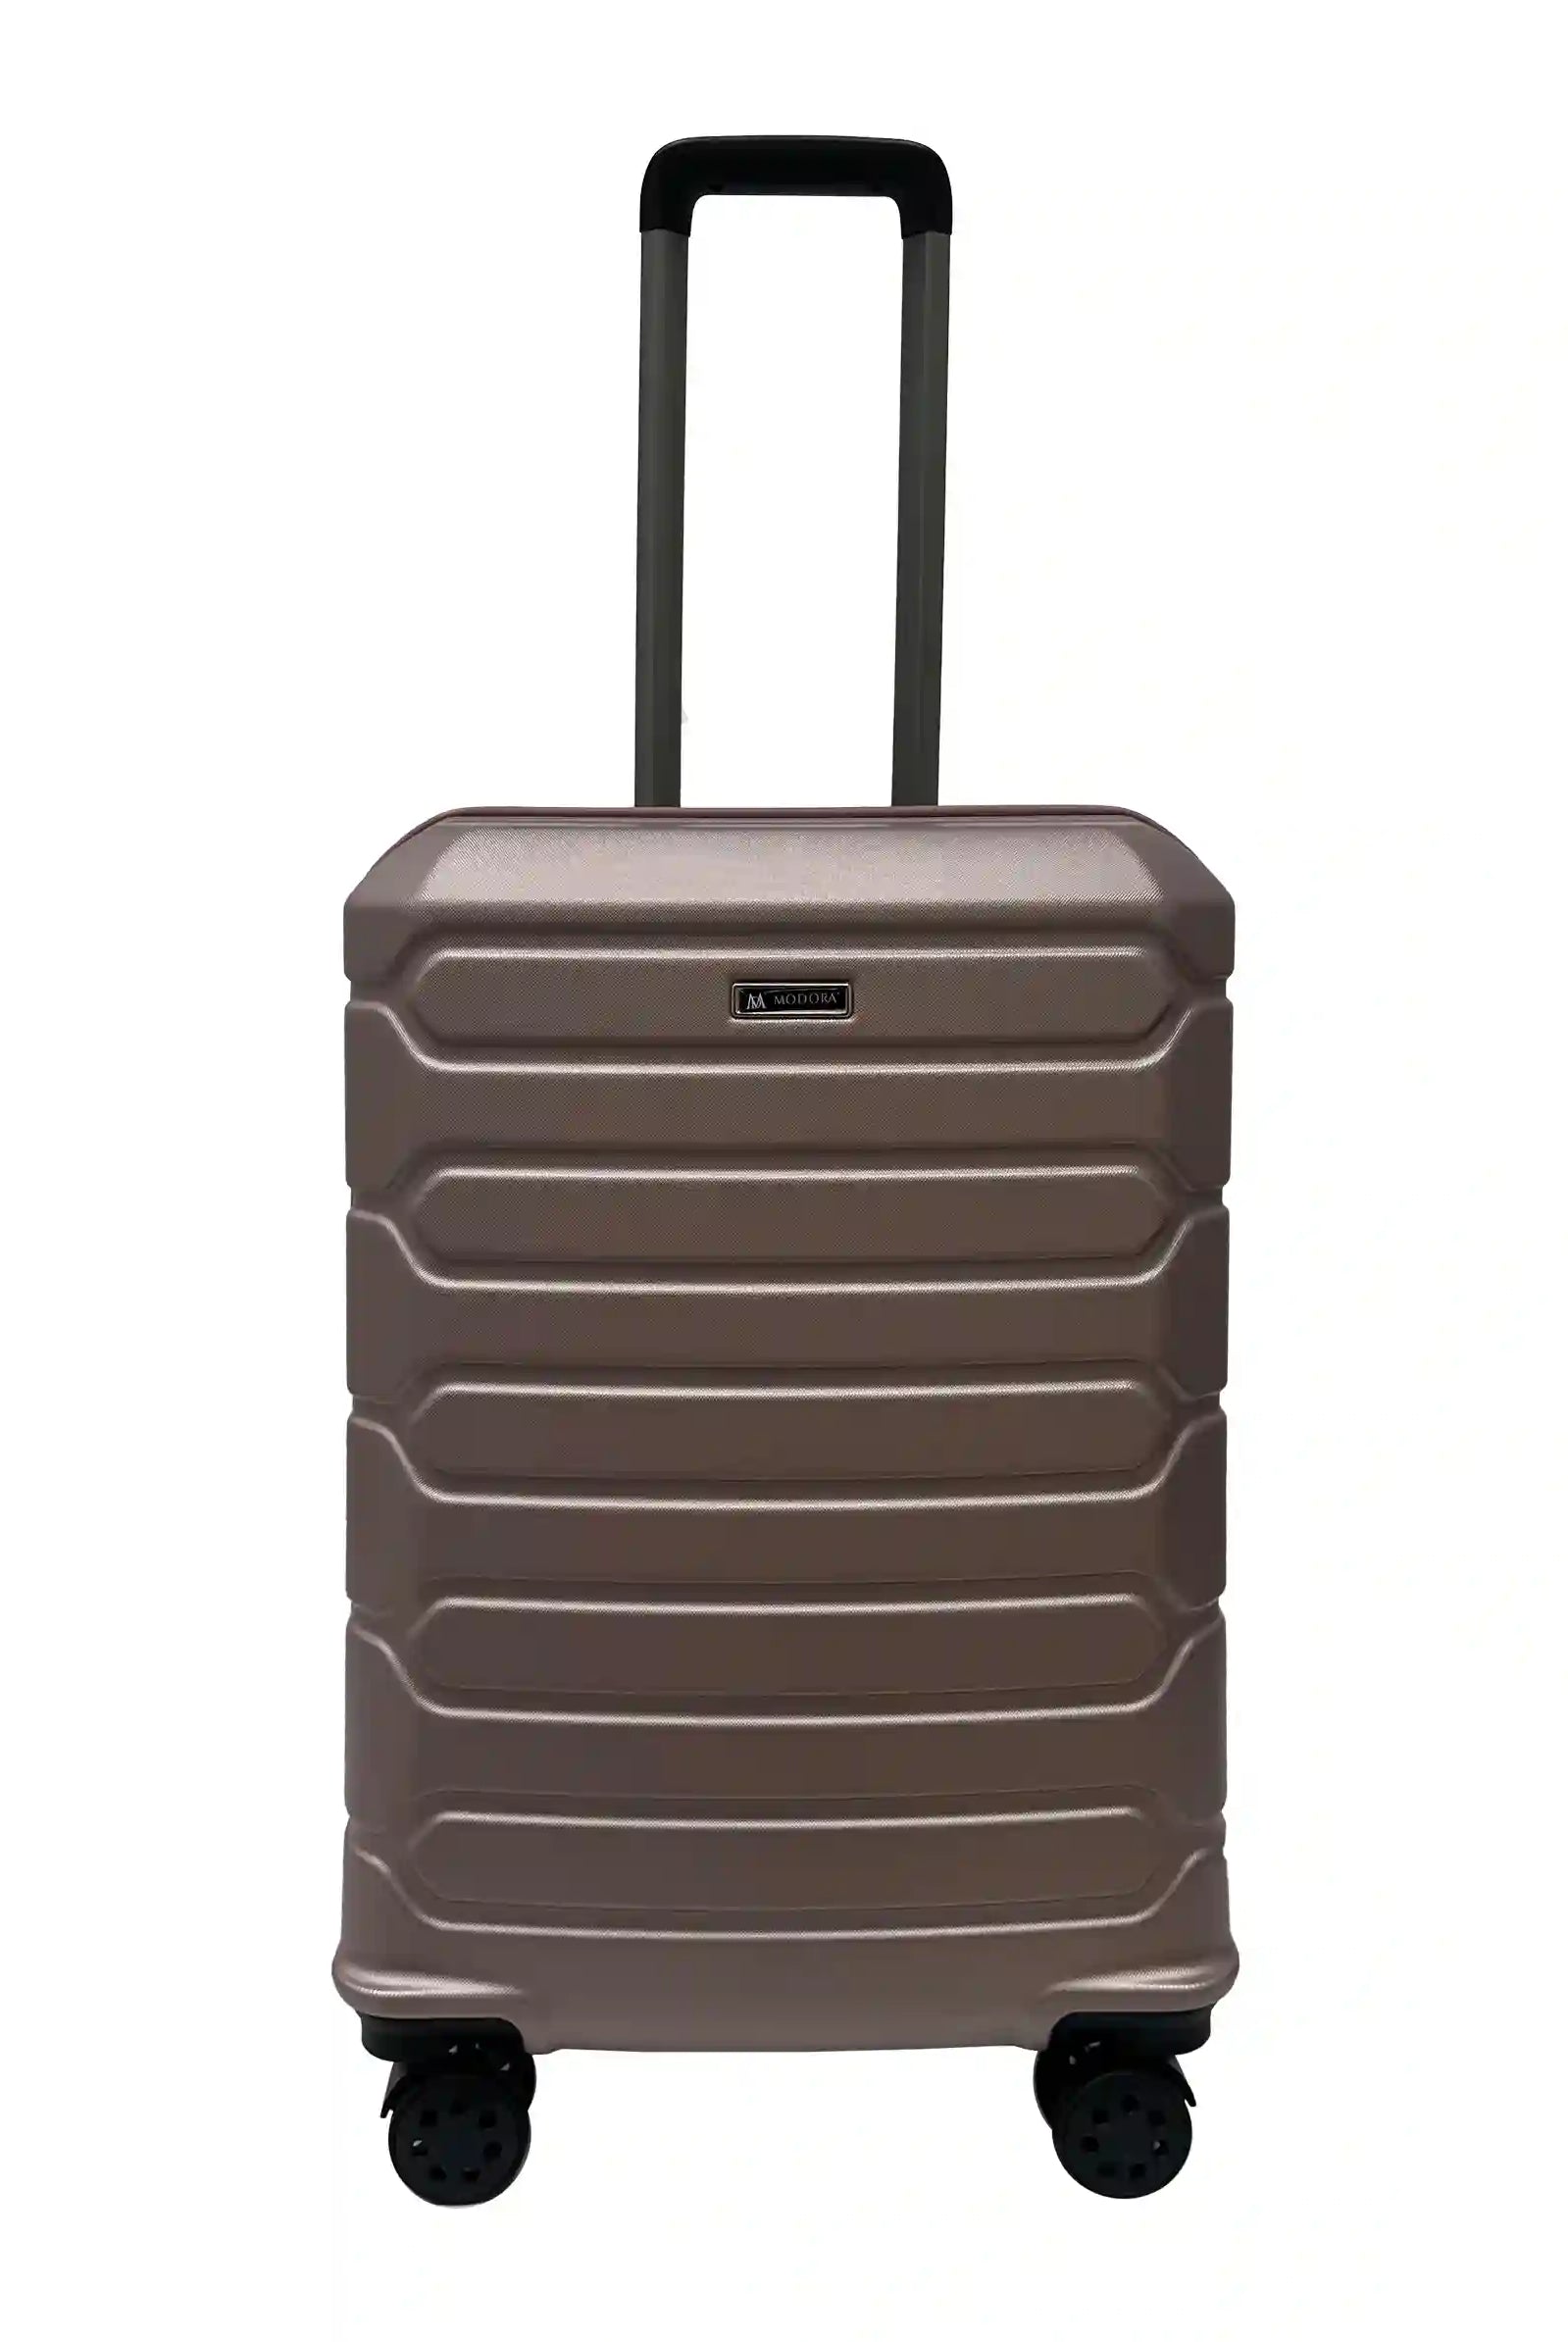 Medium suitcase uk